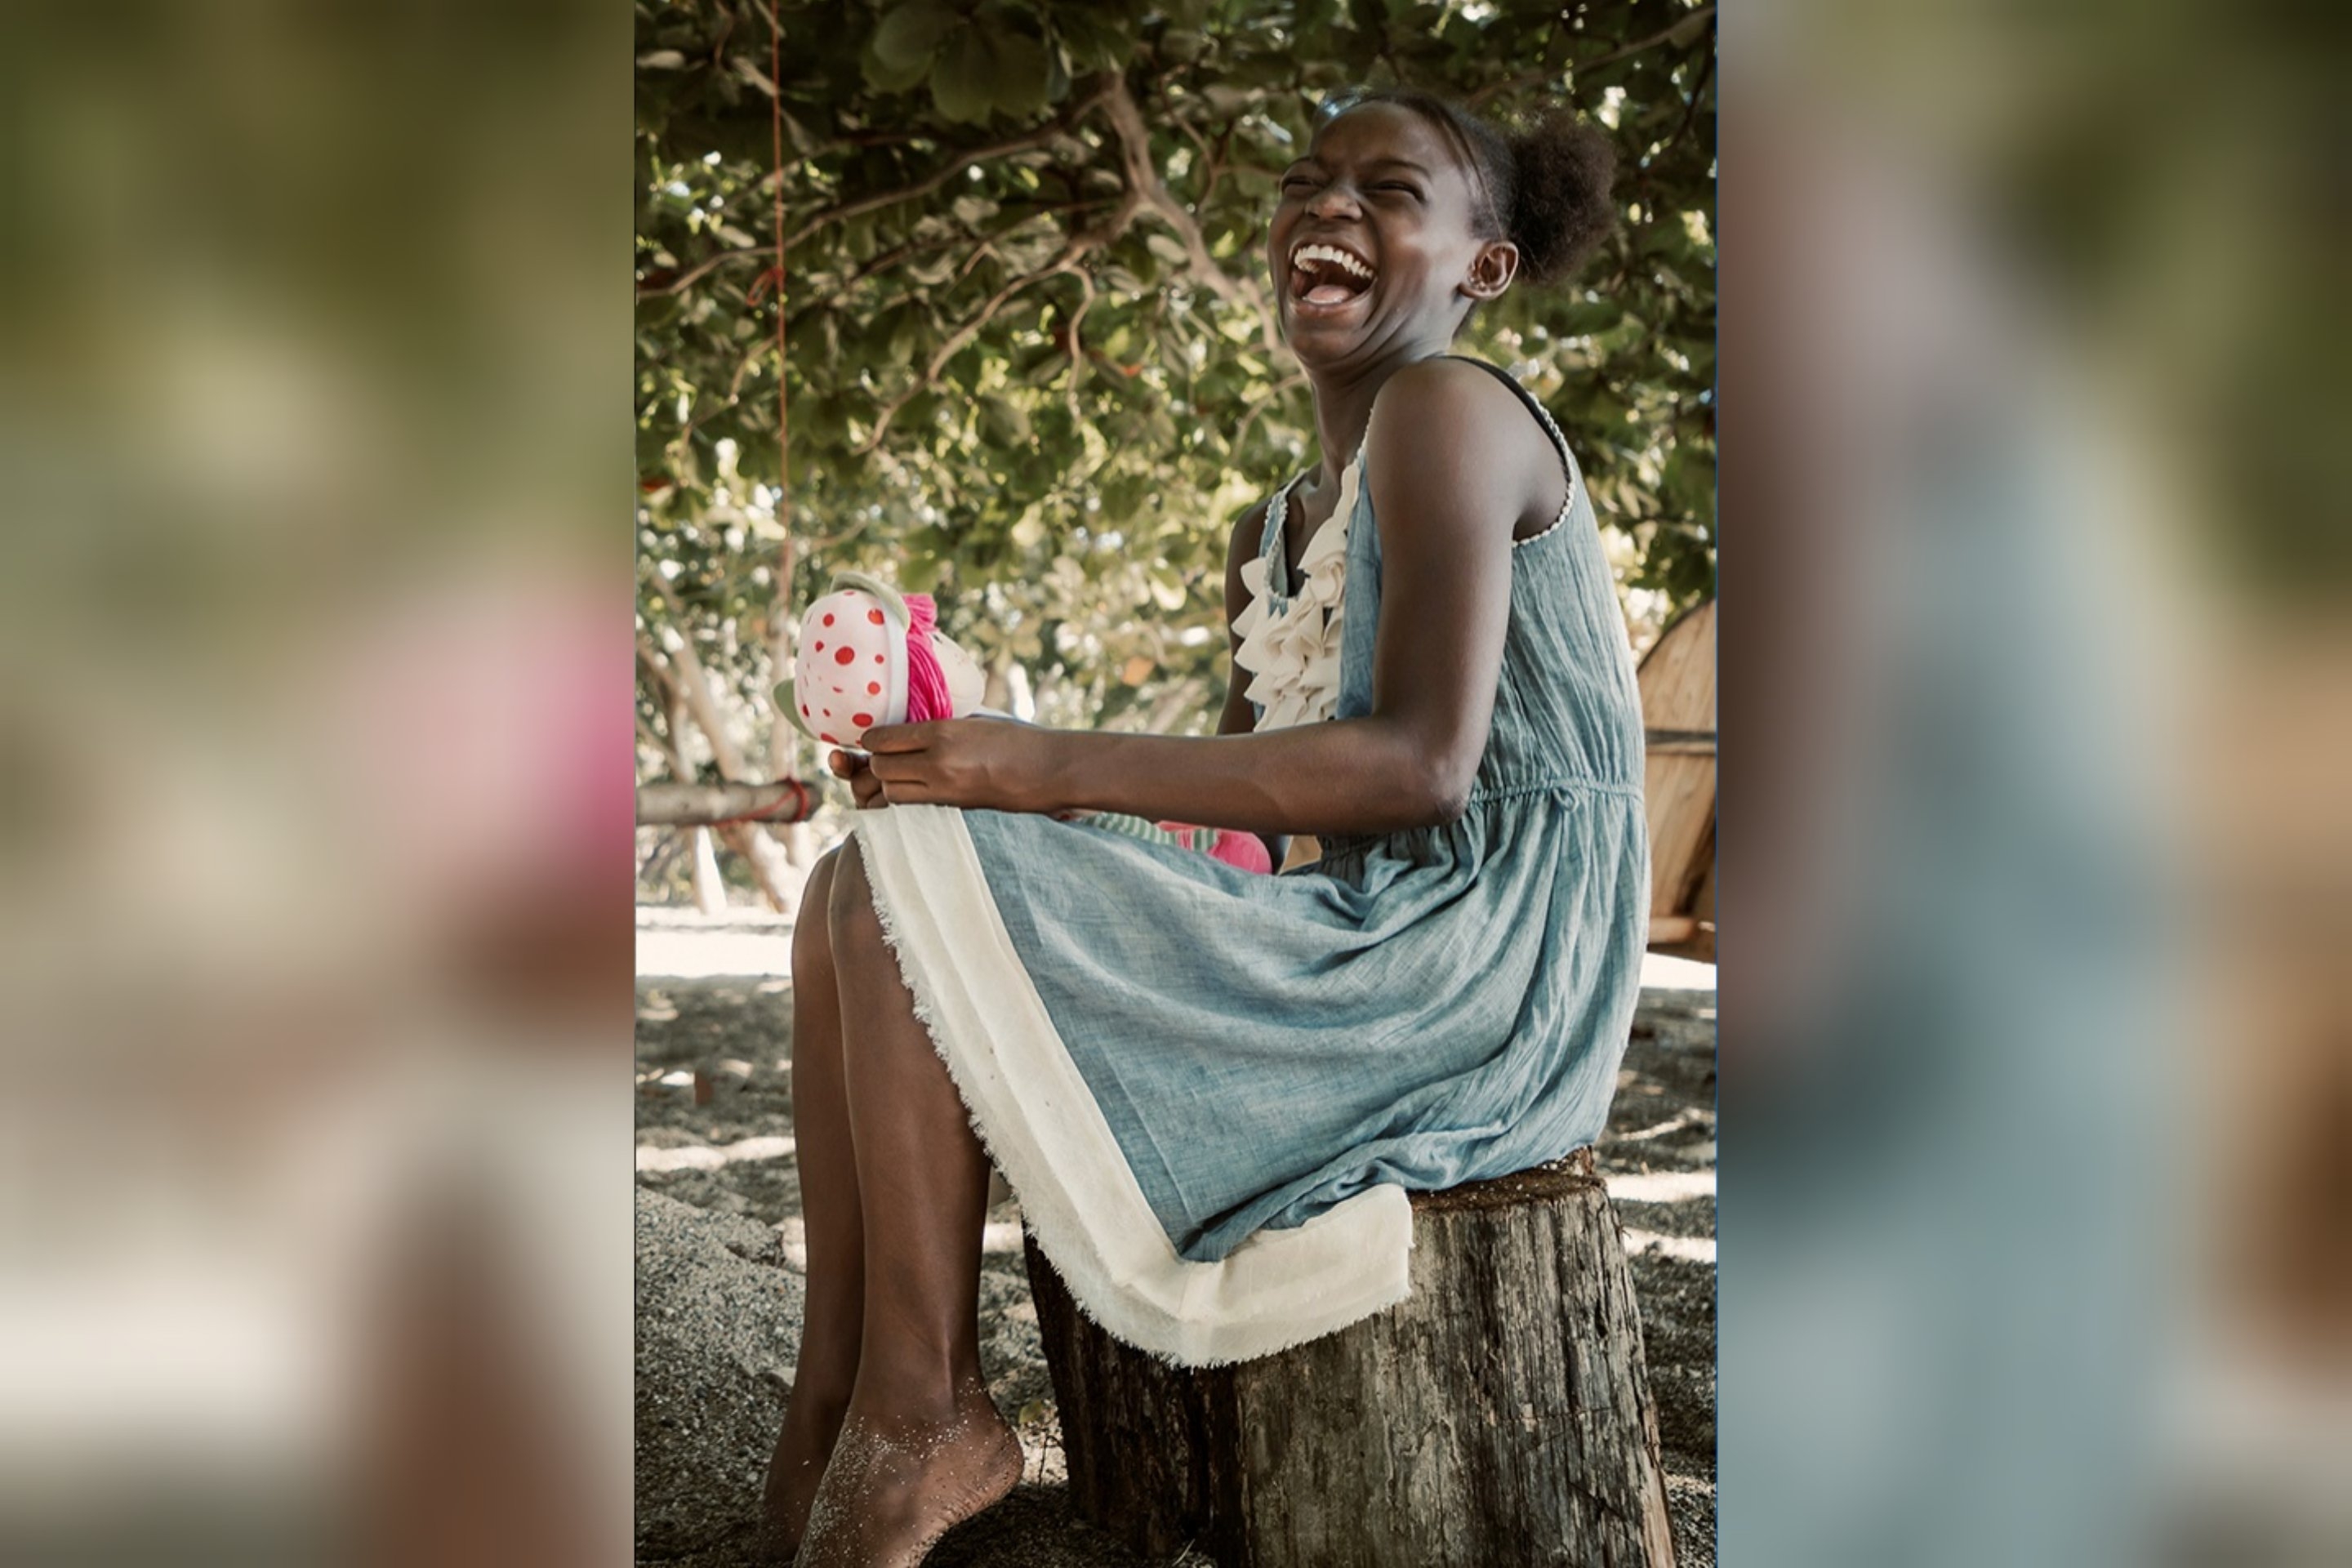 ONG cristã resgata menina de casamento infantil na África: "Obrigado por me salvarem"